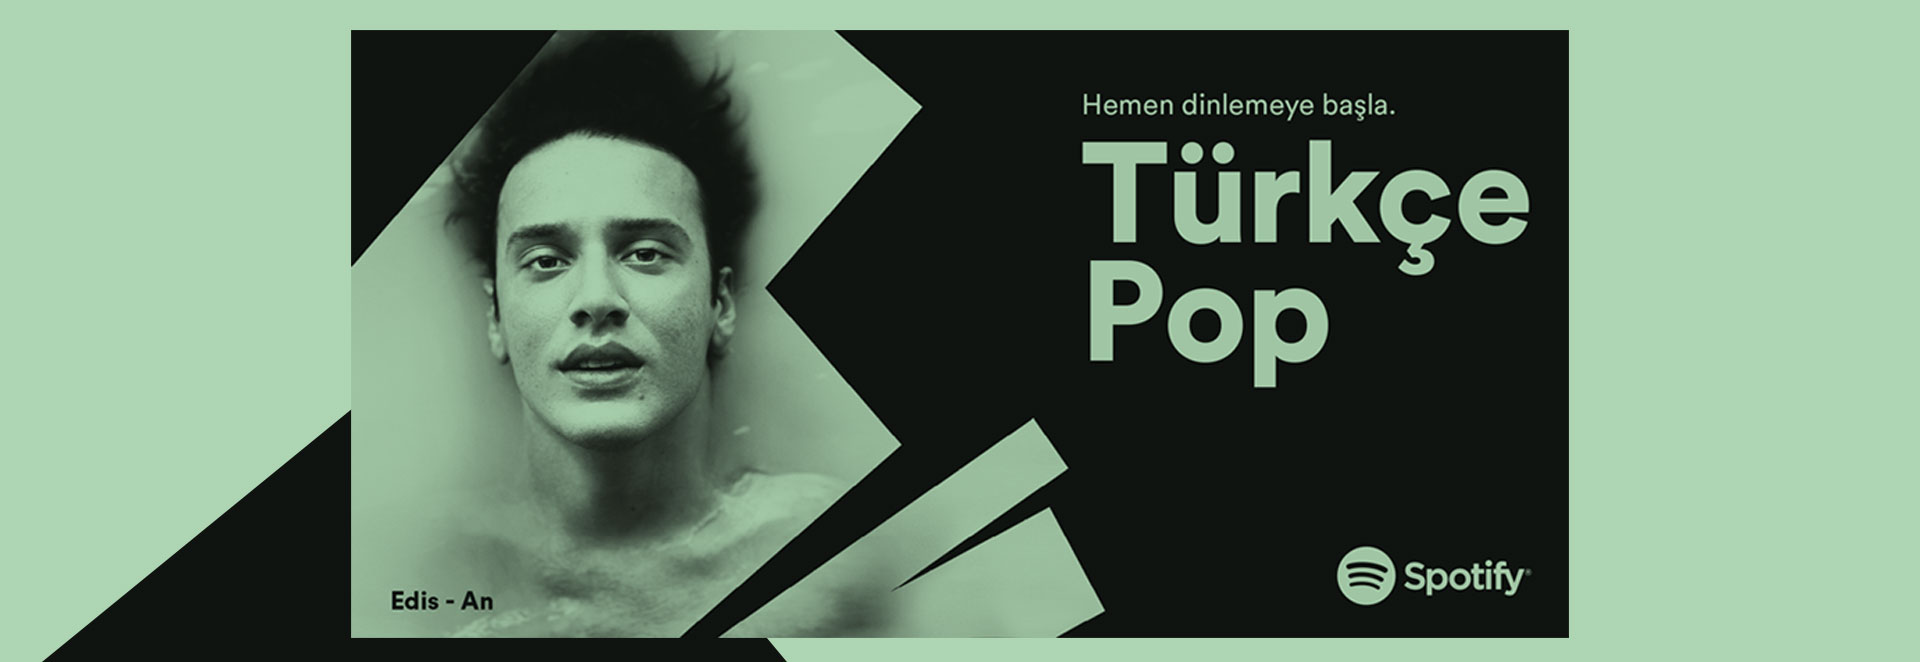 13_Spotify_Turkce_Pop_Sunum_02